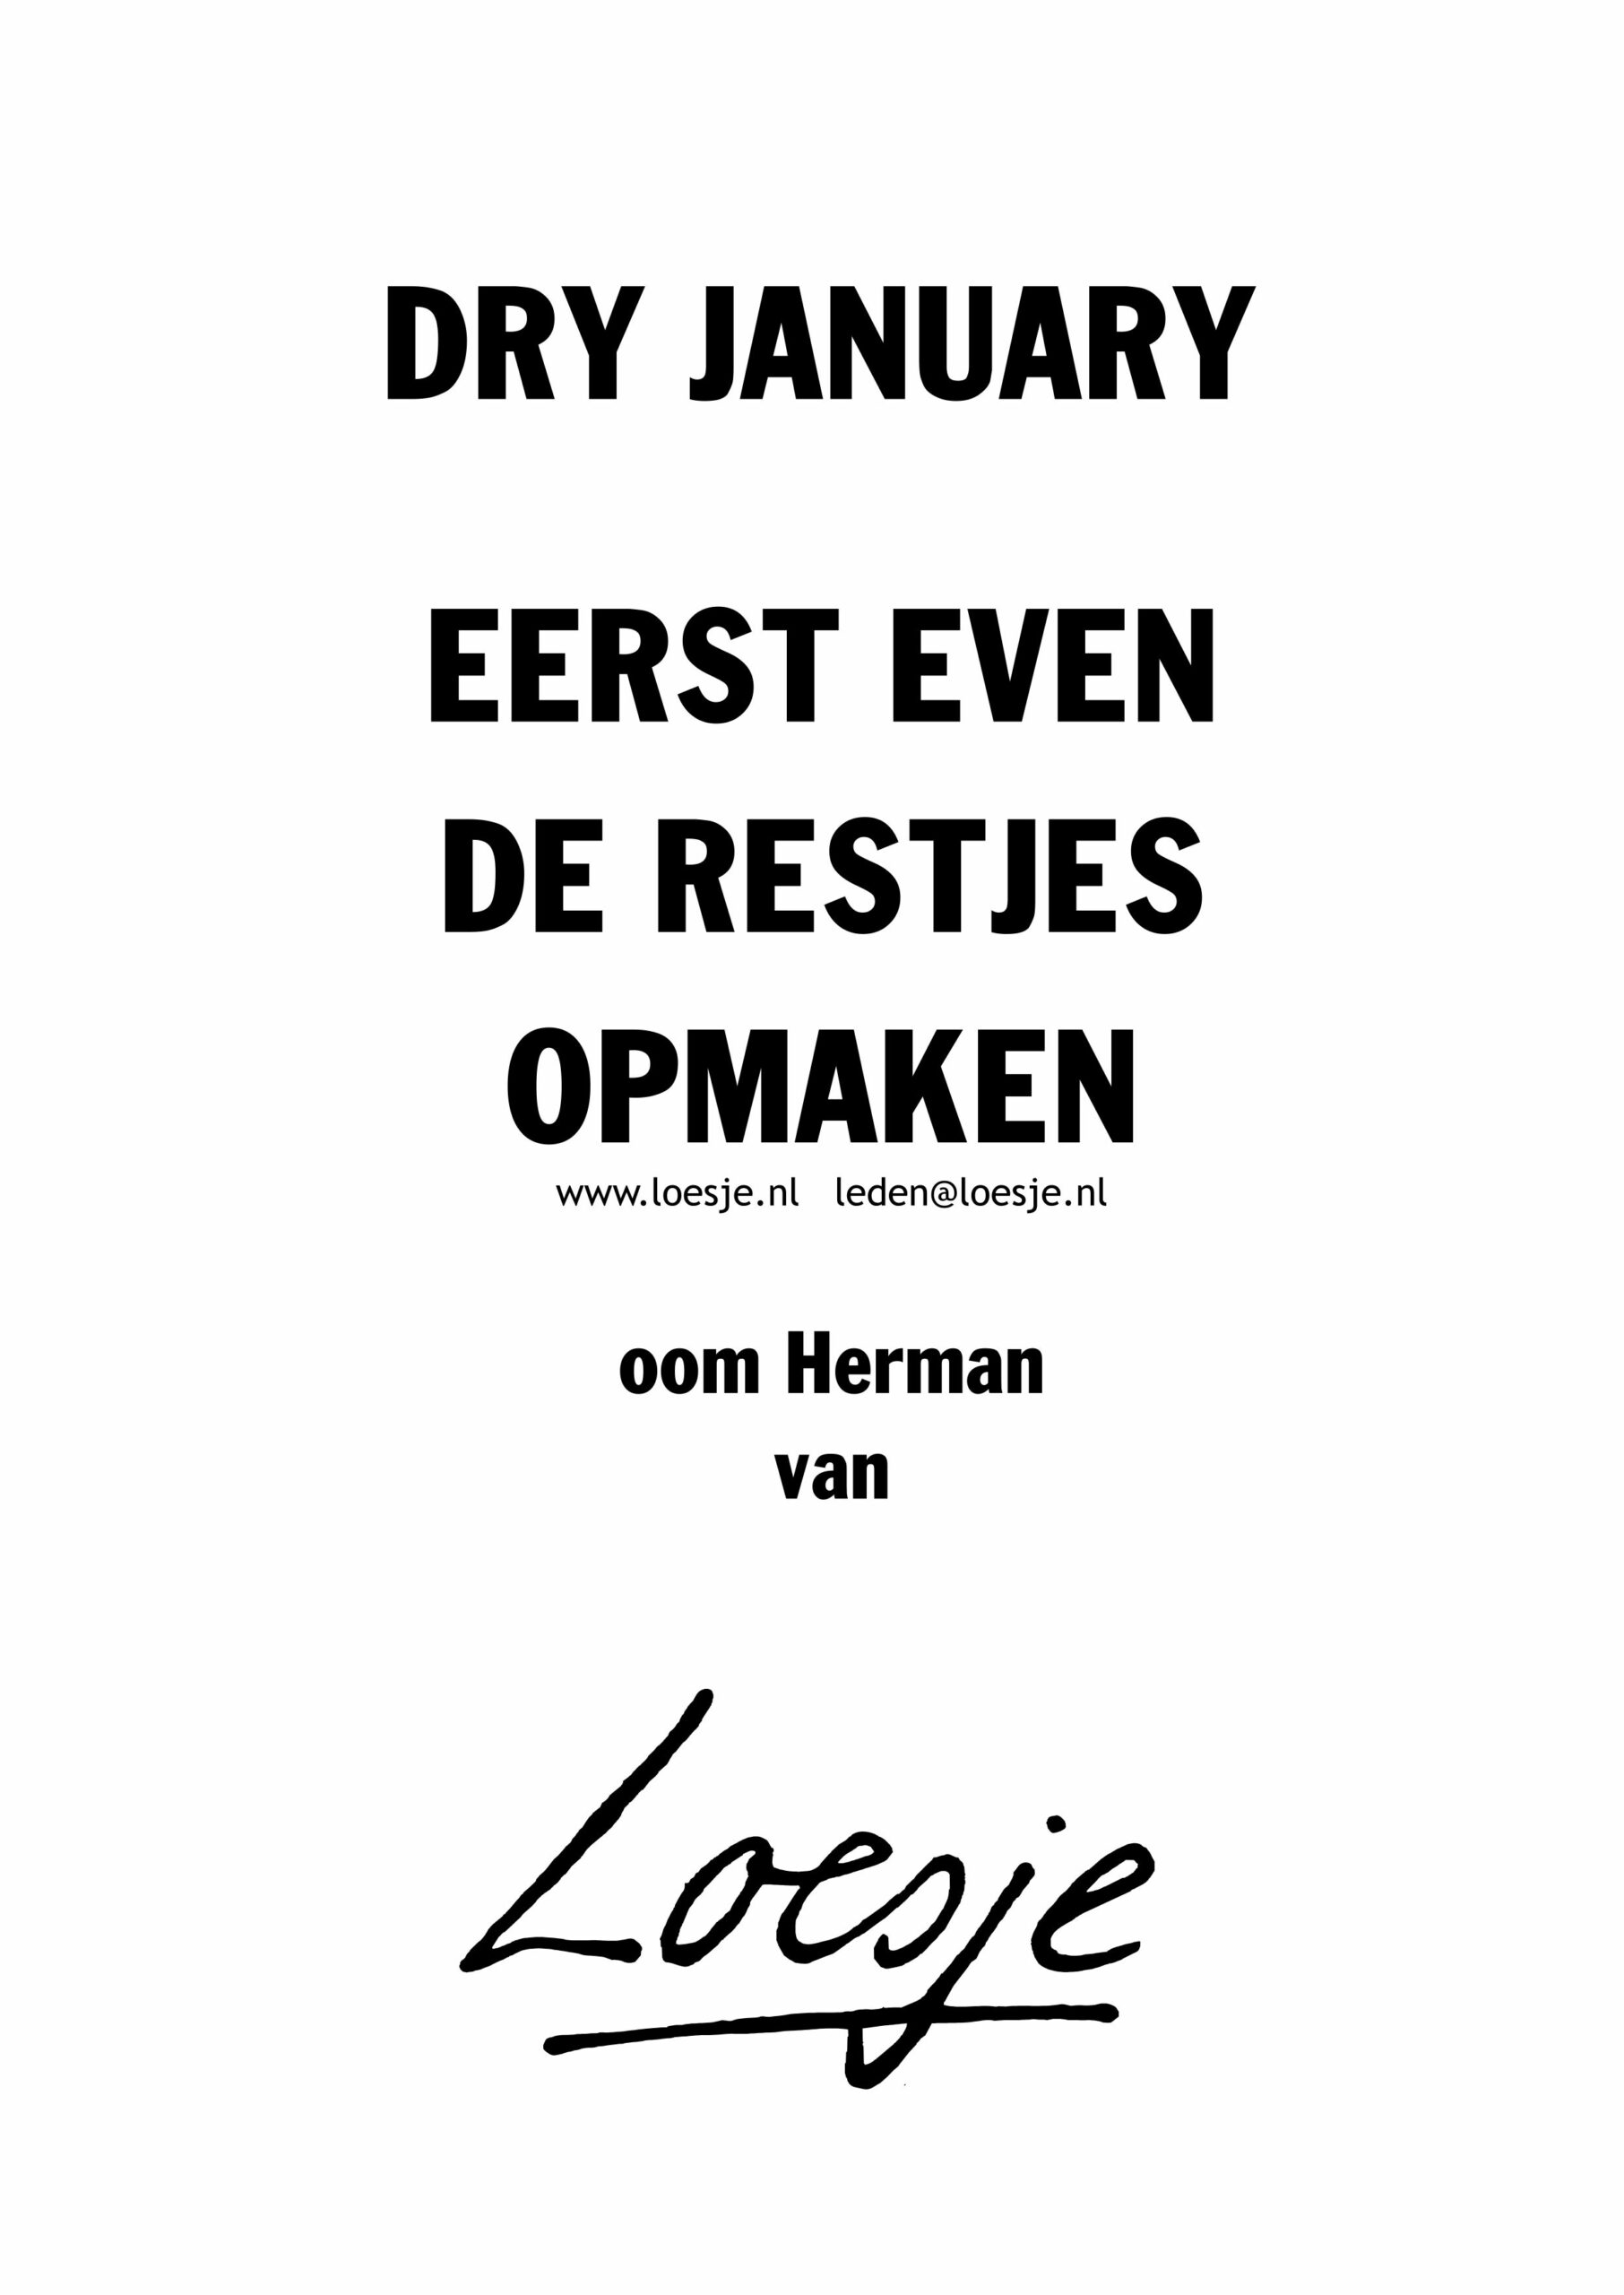 Dry January eerst even de restjes opmaken – oom Herman van Loesje